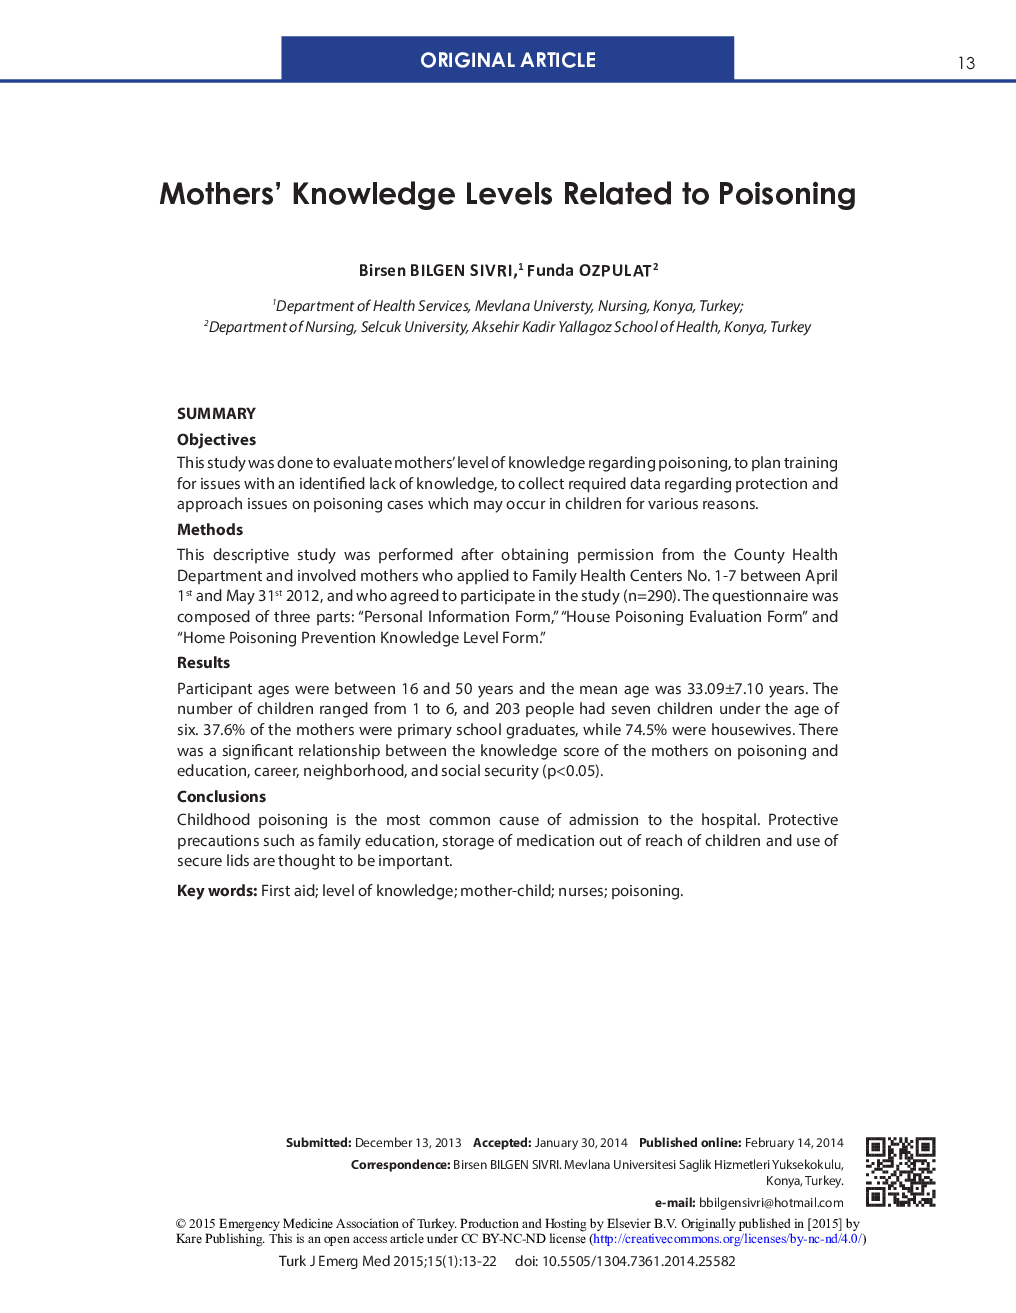 سطح آگاهی مادران مربوط به مسمومیت